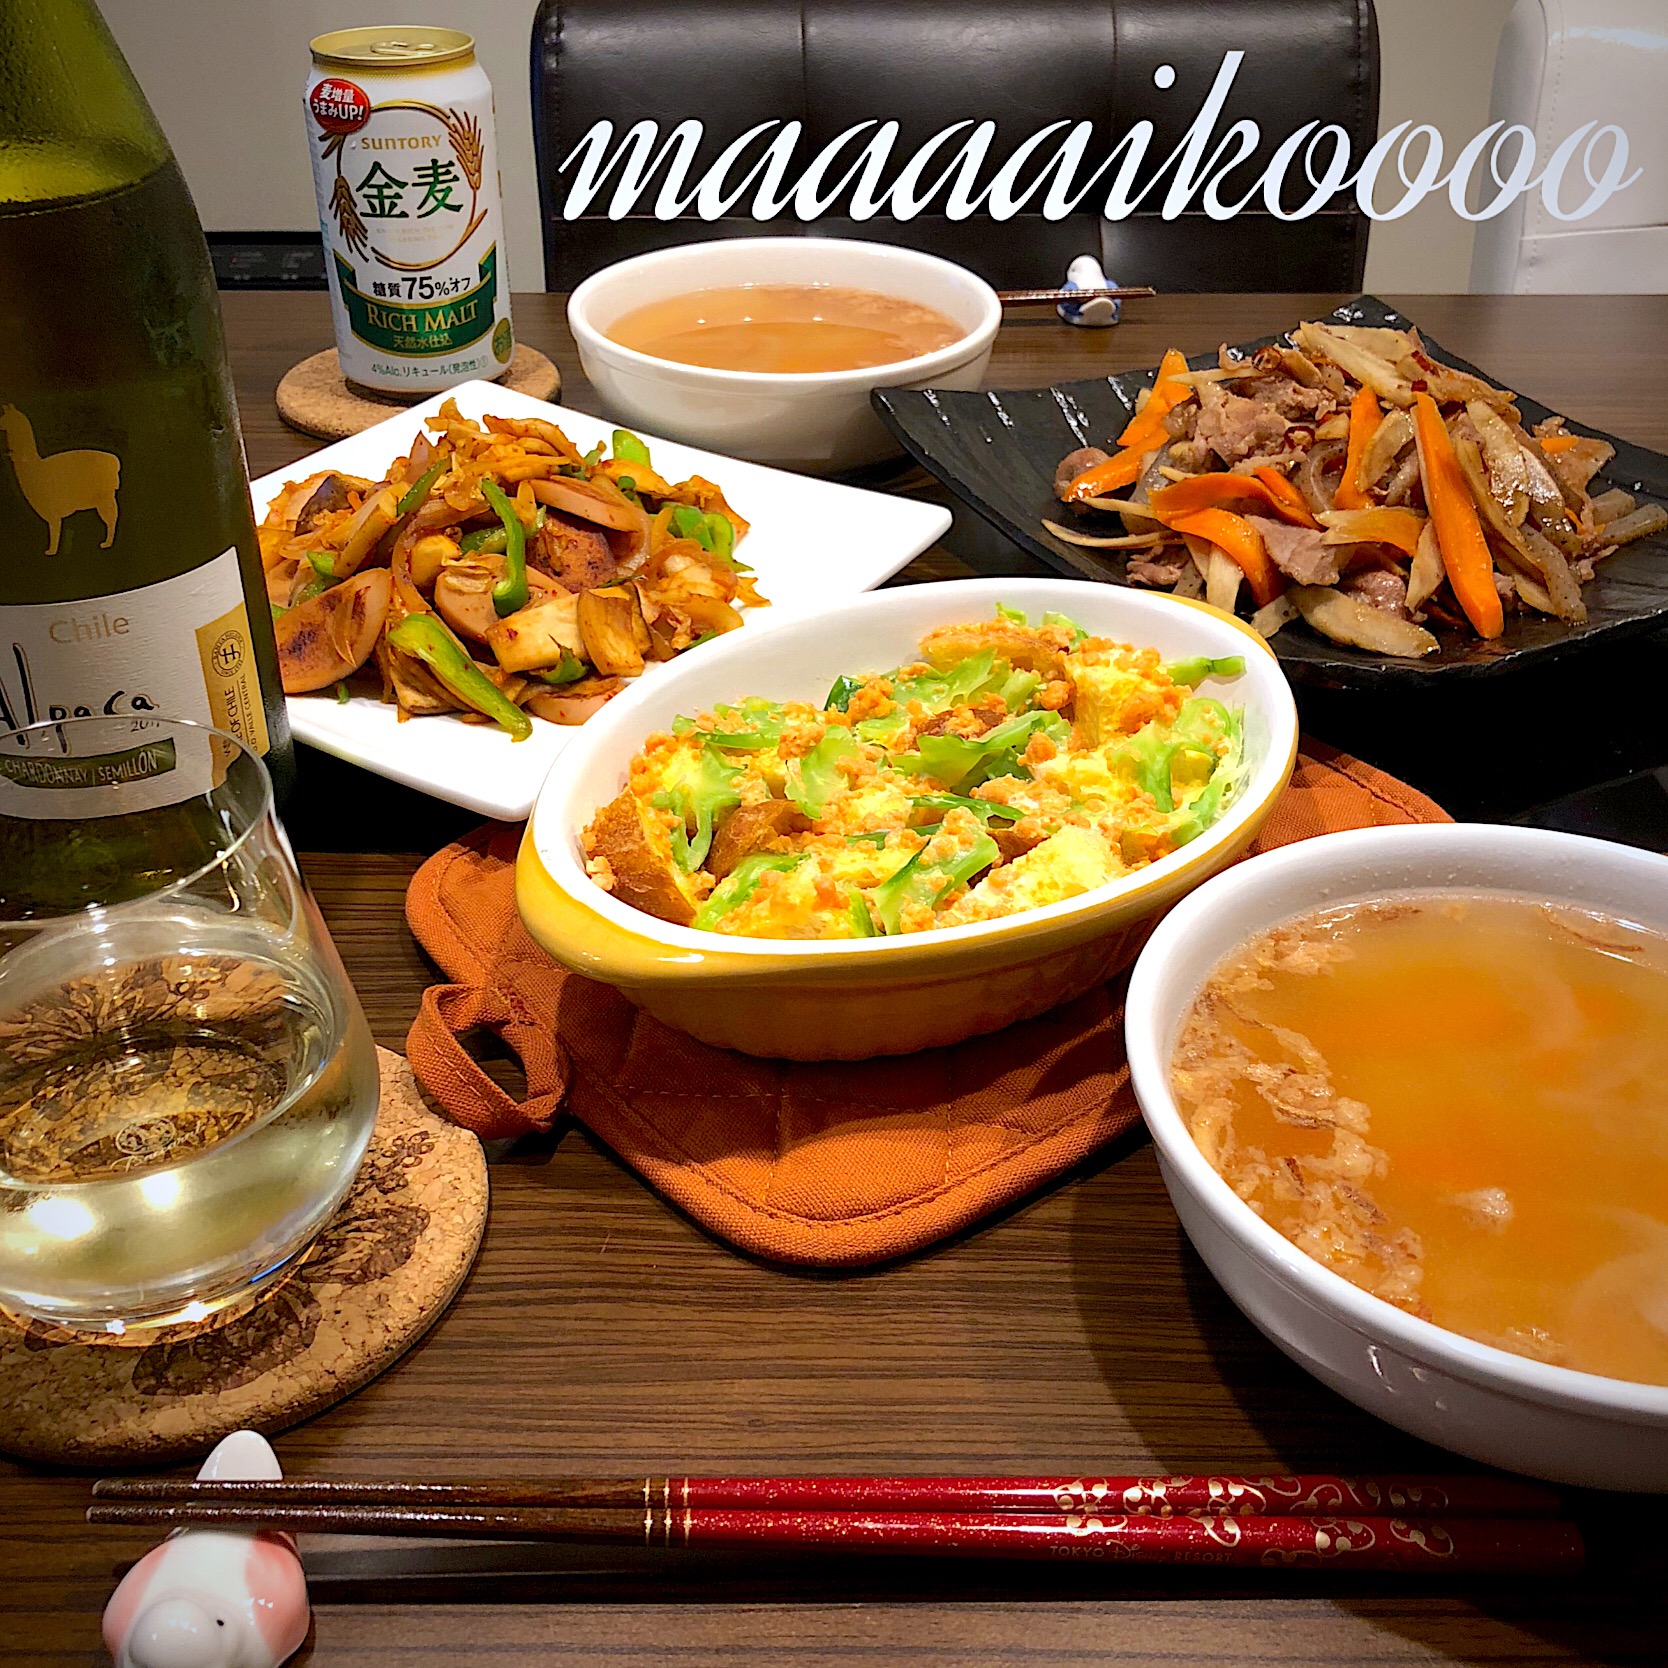 豚肉人参牛蒡の金平⭐︎エリンギと魚肉ソーセージのキムチ炒め⭐︎鮭フレークオムレツ⭐︎野菜スープ